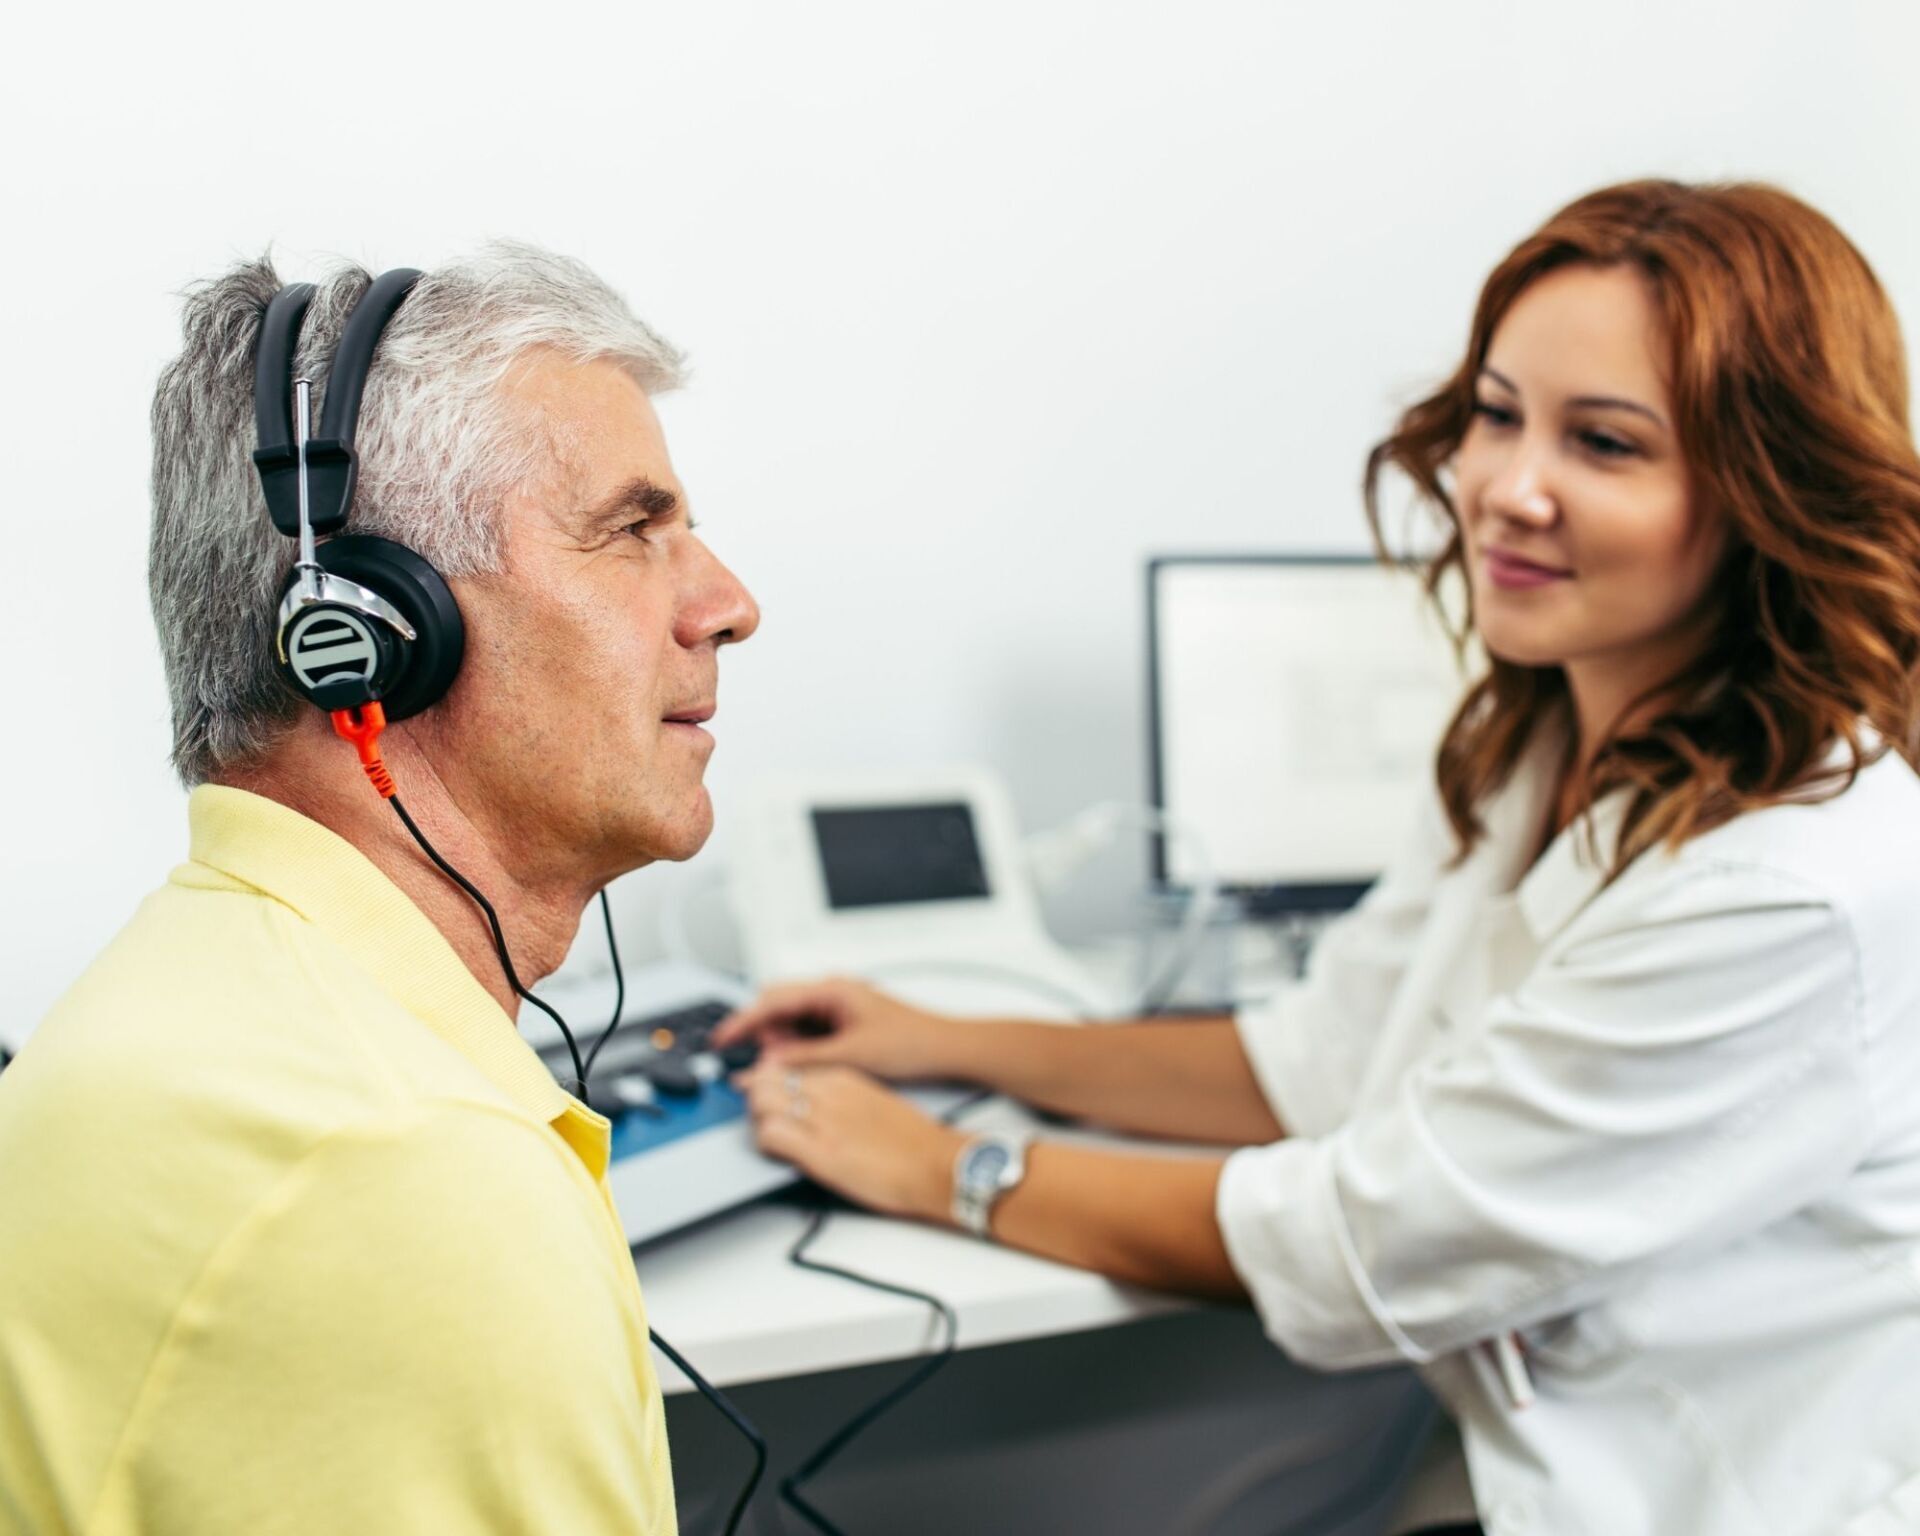 Représente le déroulement d'un test de dépistage auditif sans frais avec l'audioprothésiste